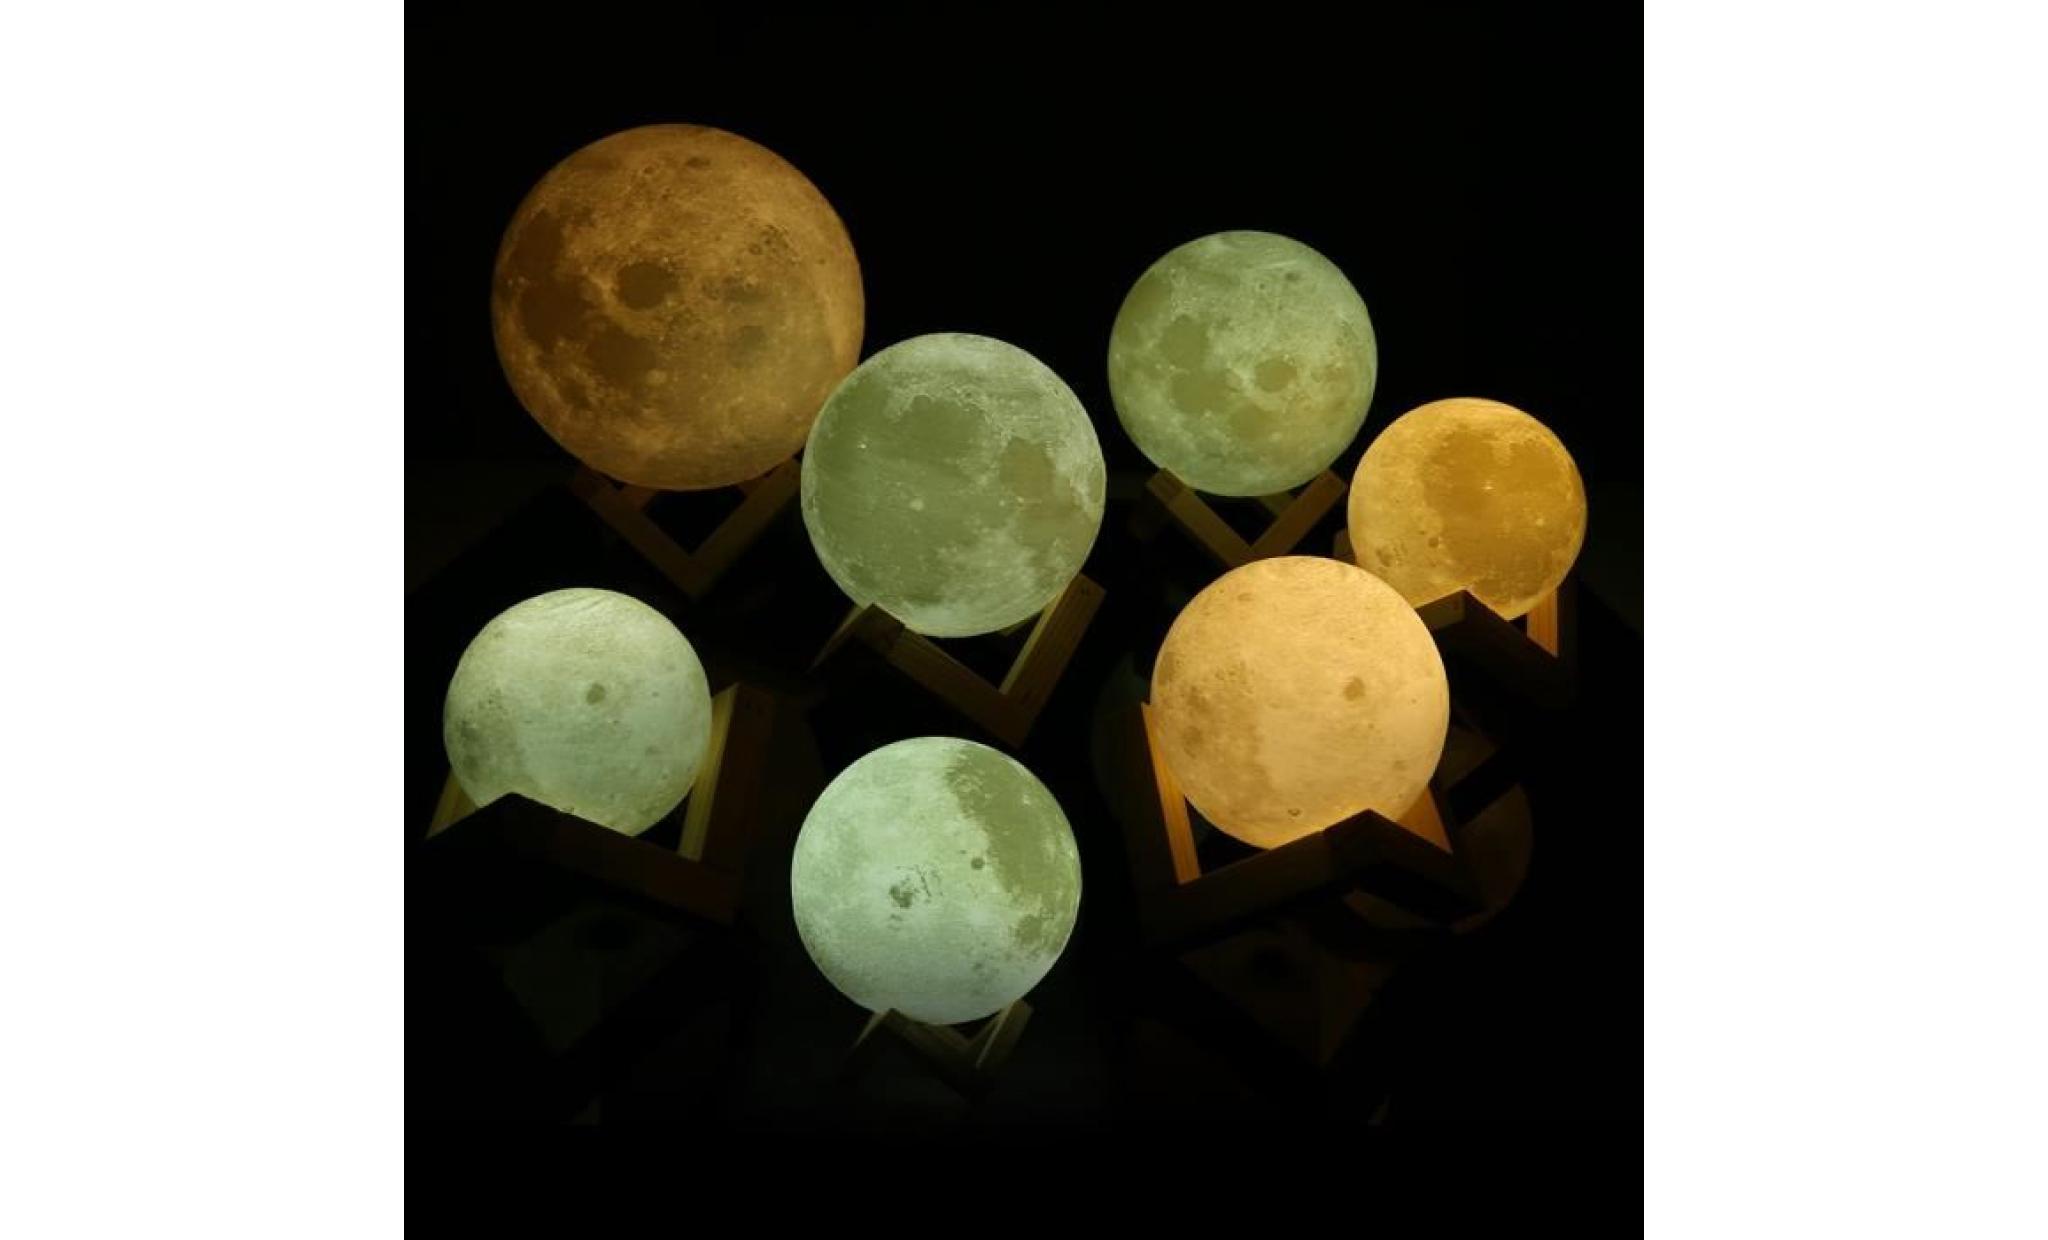 lampe de lune 10cm   lune imprimée en 3d   meilleur cadeau pour les enfants, amis, amants   avec usb et support en bois pas cher